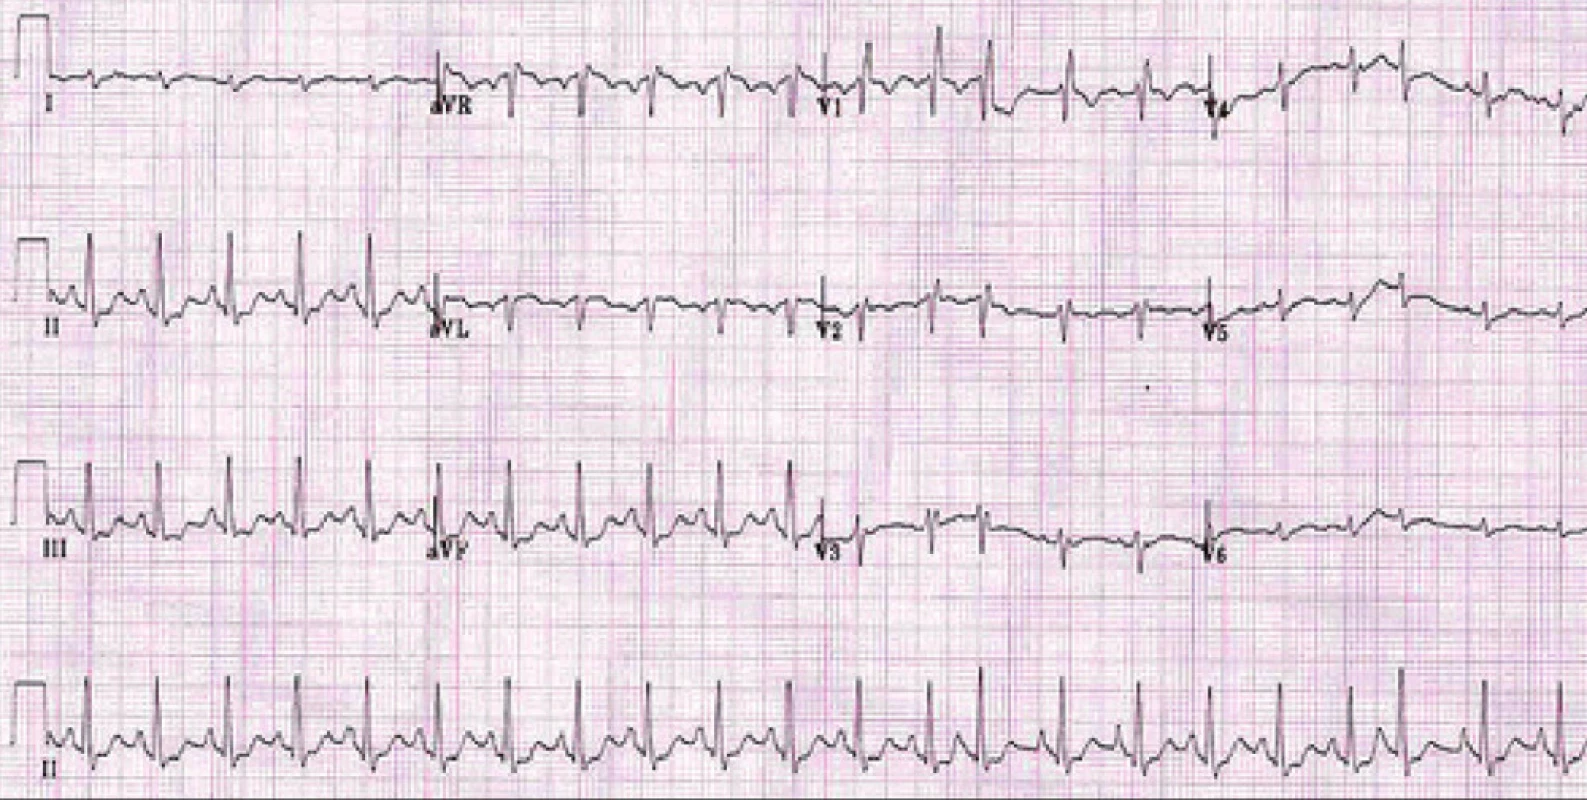 EKG u nemocného s CHOPN:
P pulmonale, blok pravého Tawarova raménka, hypertrofie pravé komory a ojedinělá supraventrikulární extrasystola.